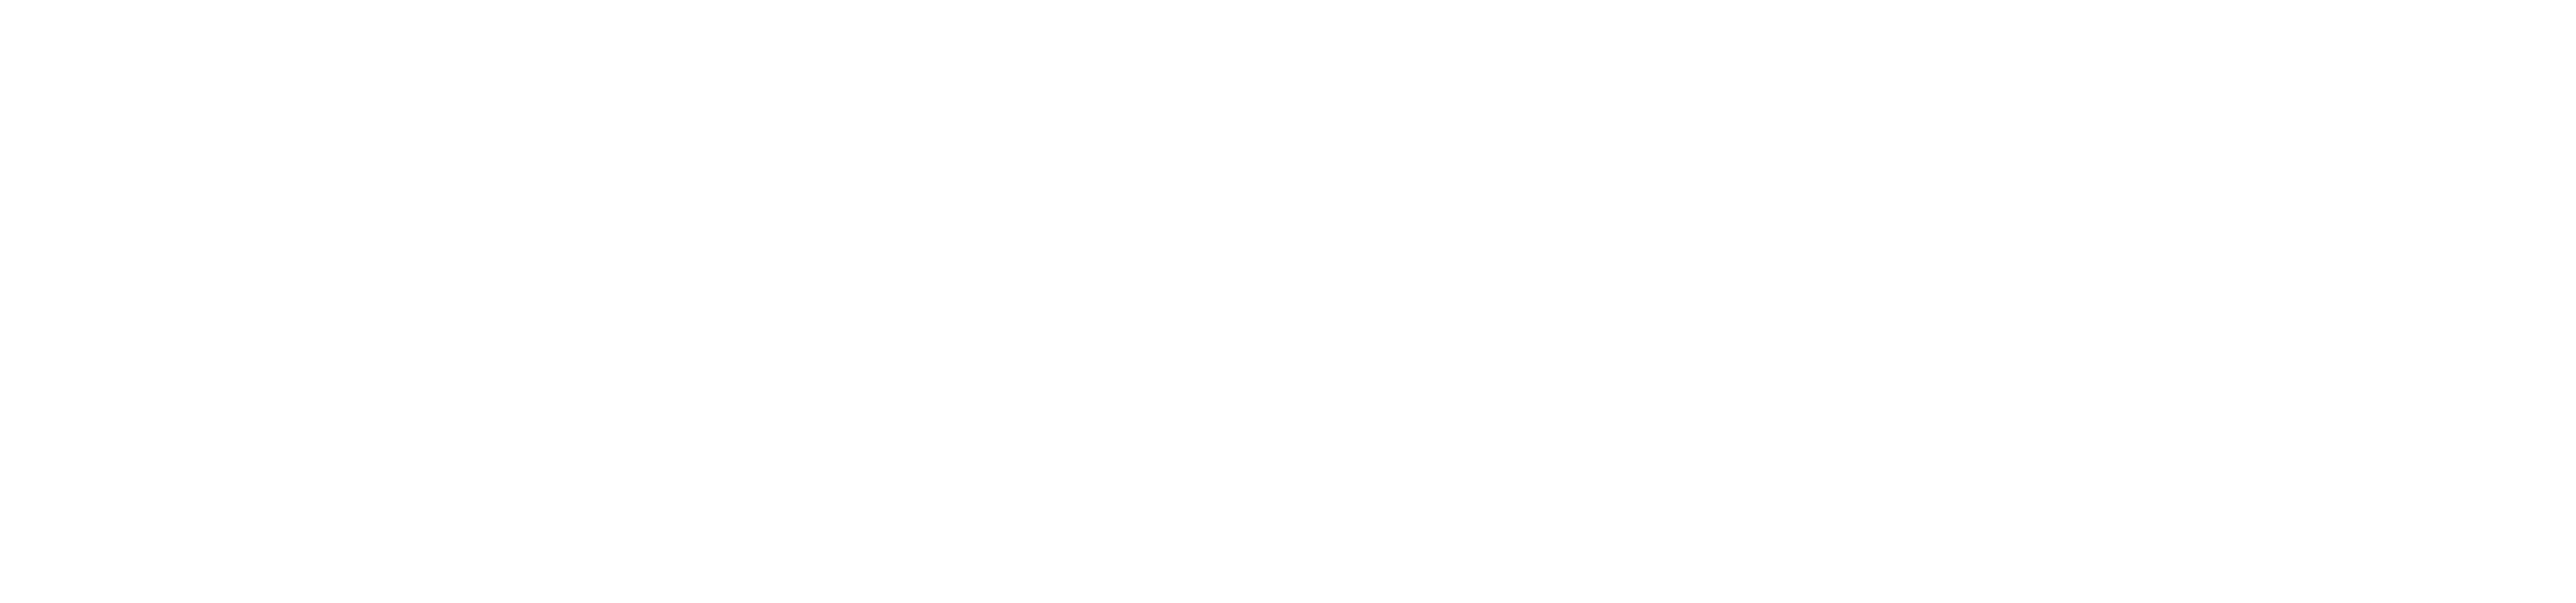 Appatree Logo